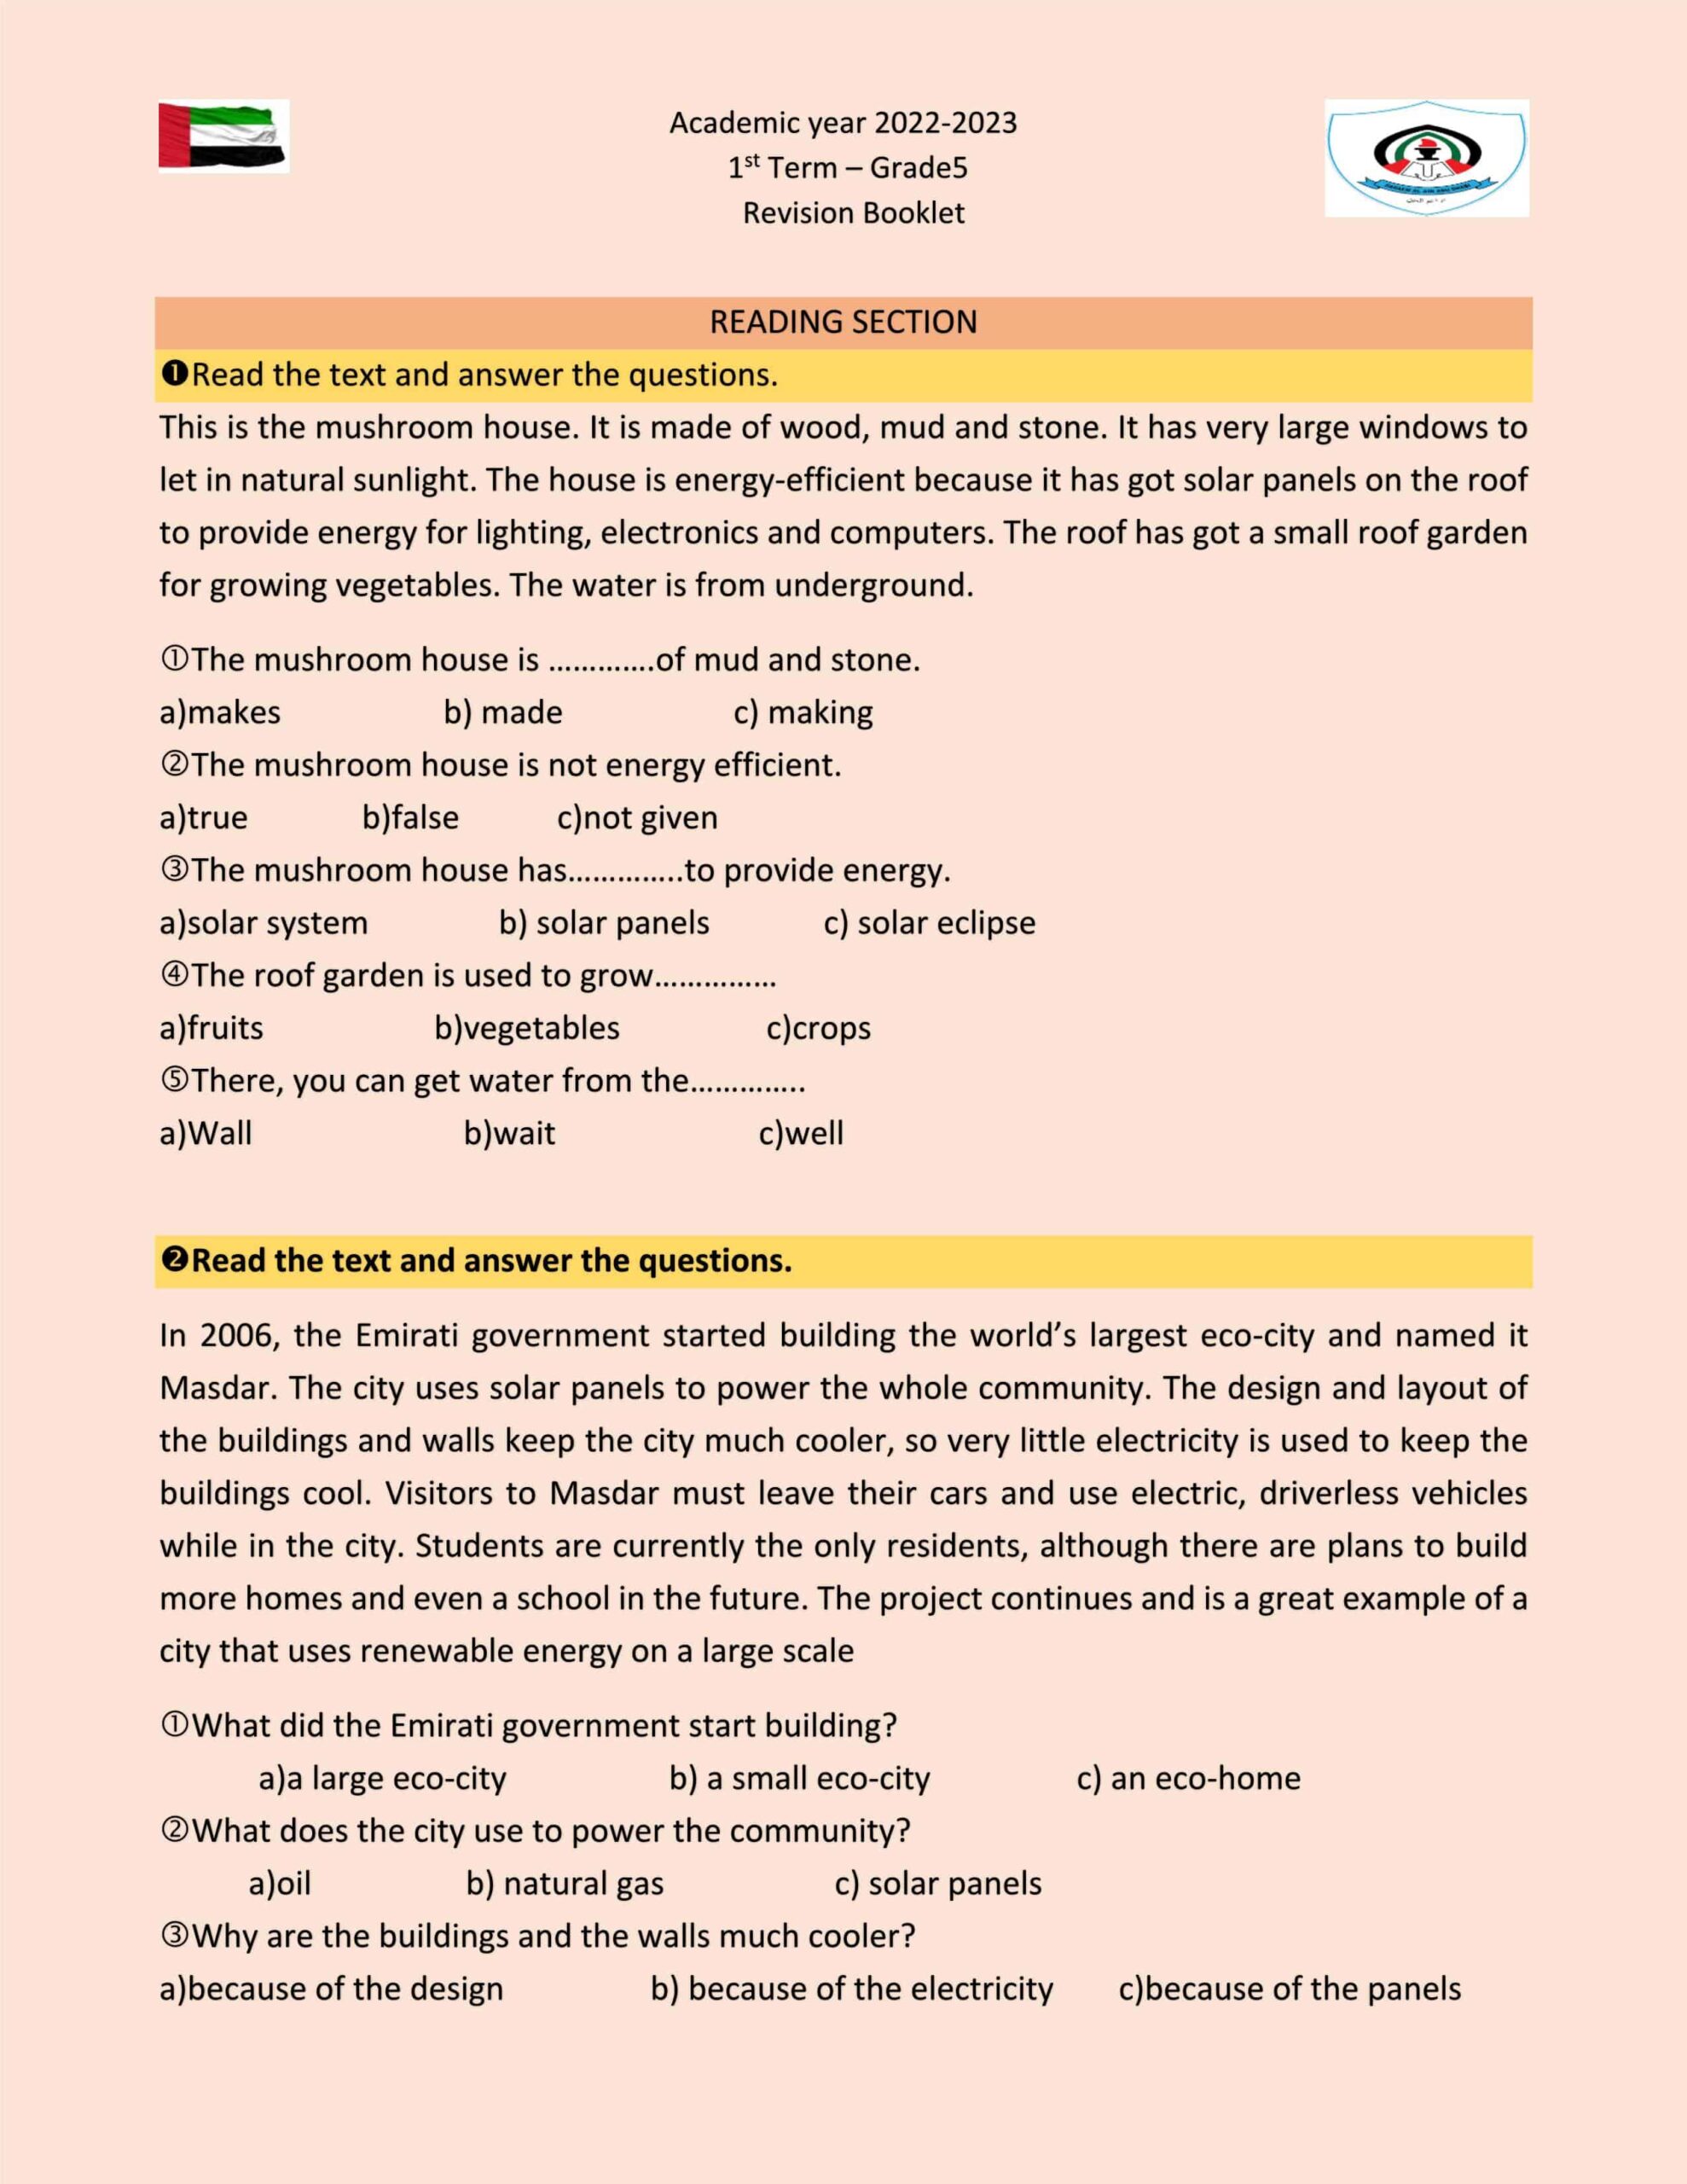 أوراق عمل Revision Booklet اللغة الإنجليزية الصف الخامس